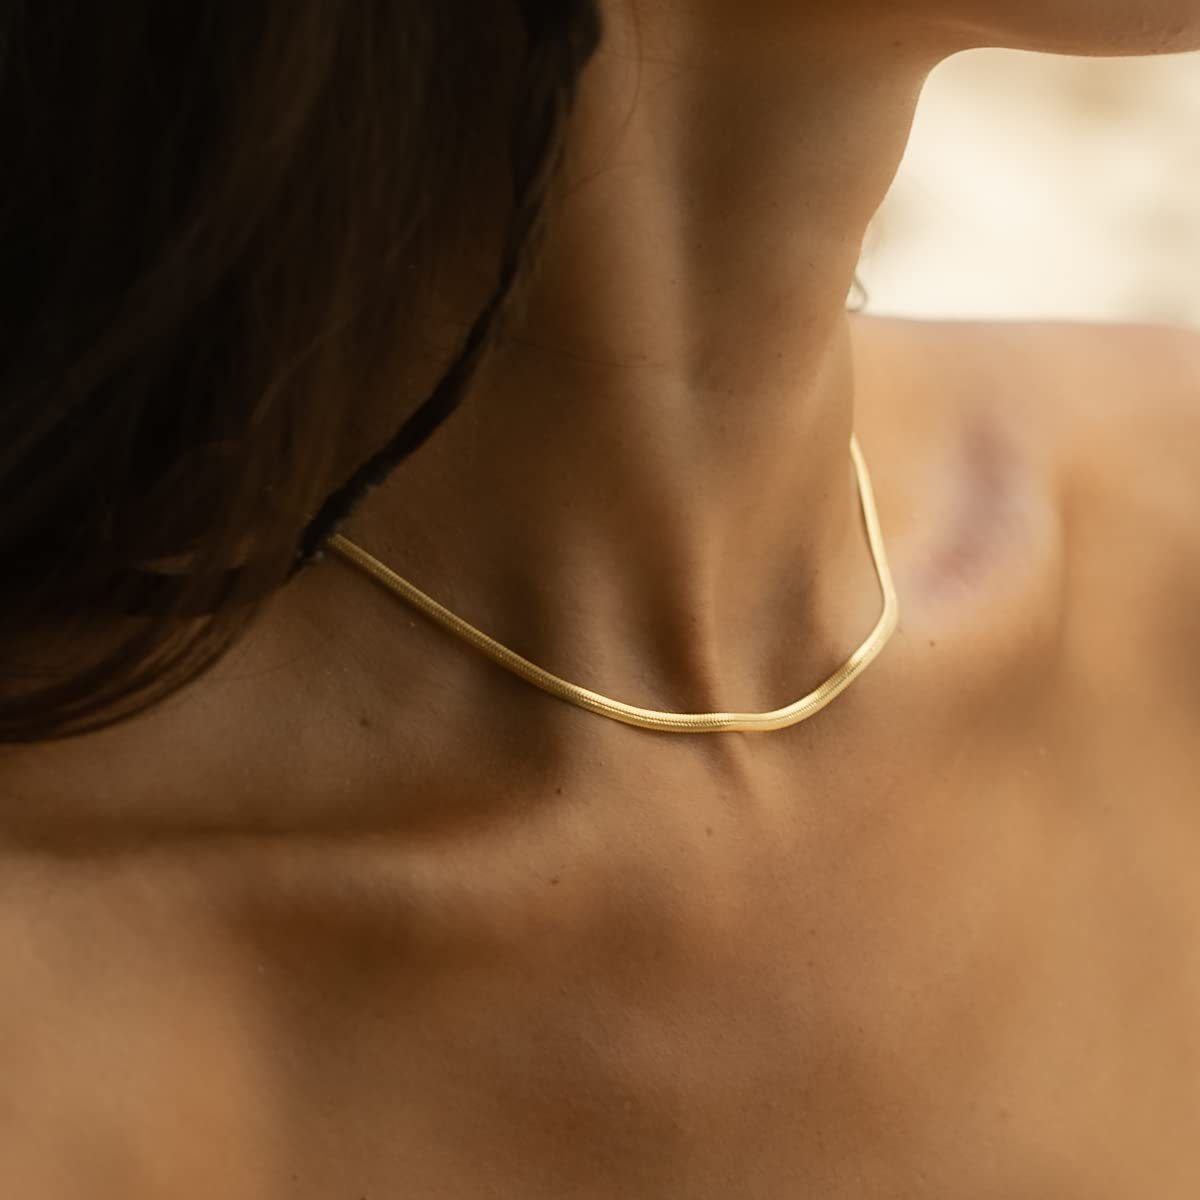 Made by Nami Schlangenkette Halskette mit starkem Karabiner-Verschluss, Choker Halskette Edelstahl 3mm Gliederkette Gold